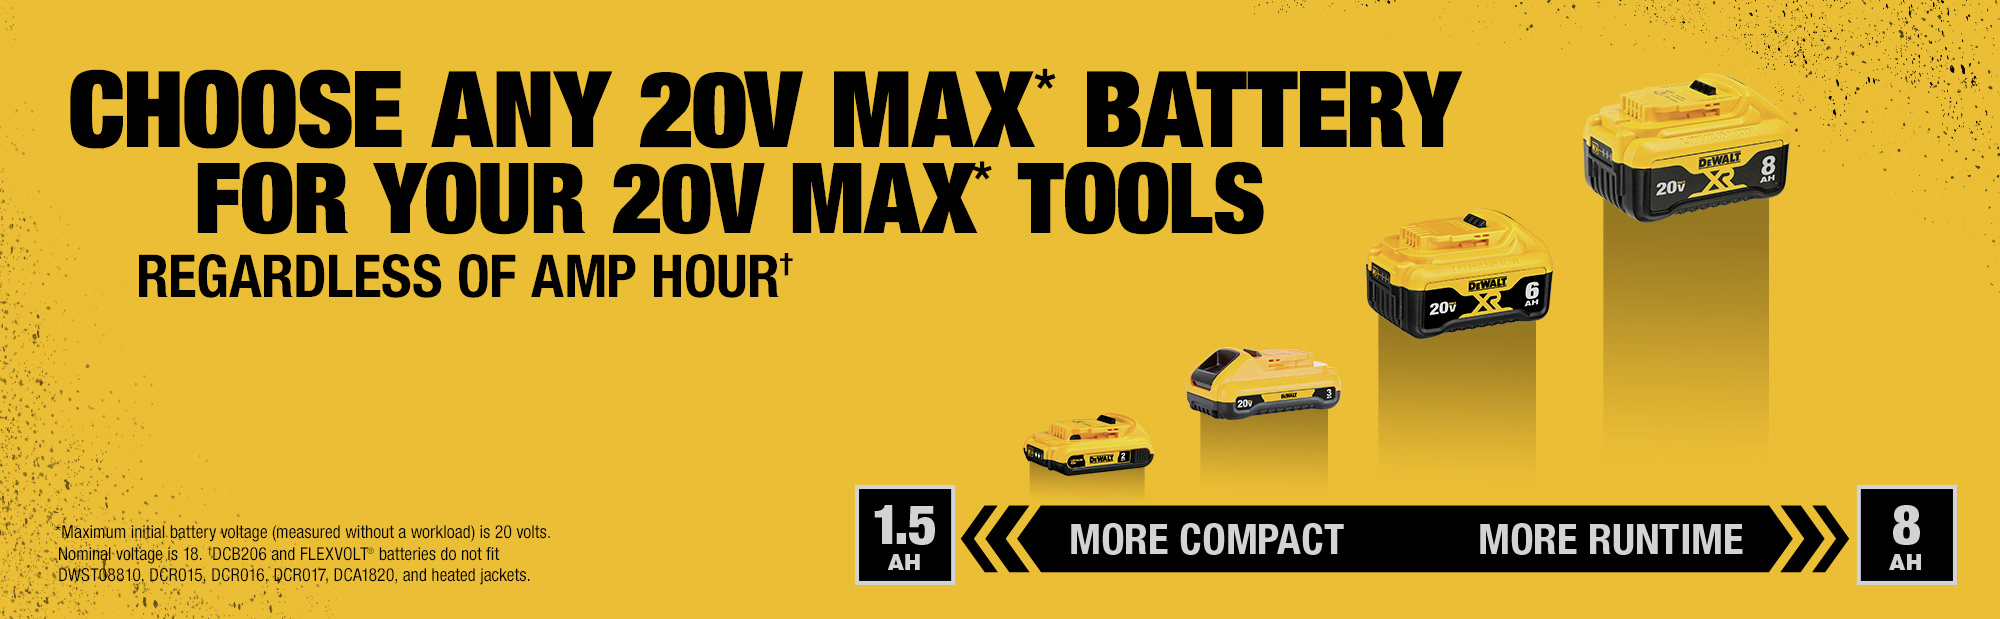 Choose Any 20V MAX Battery